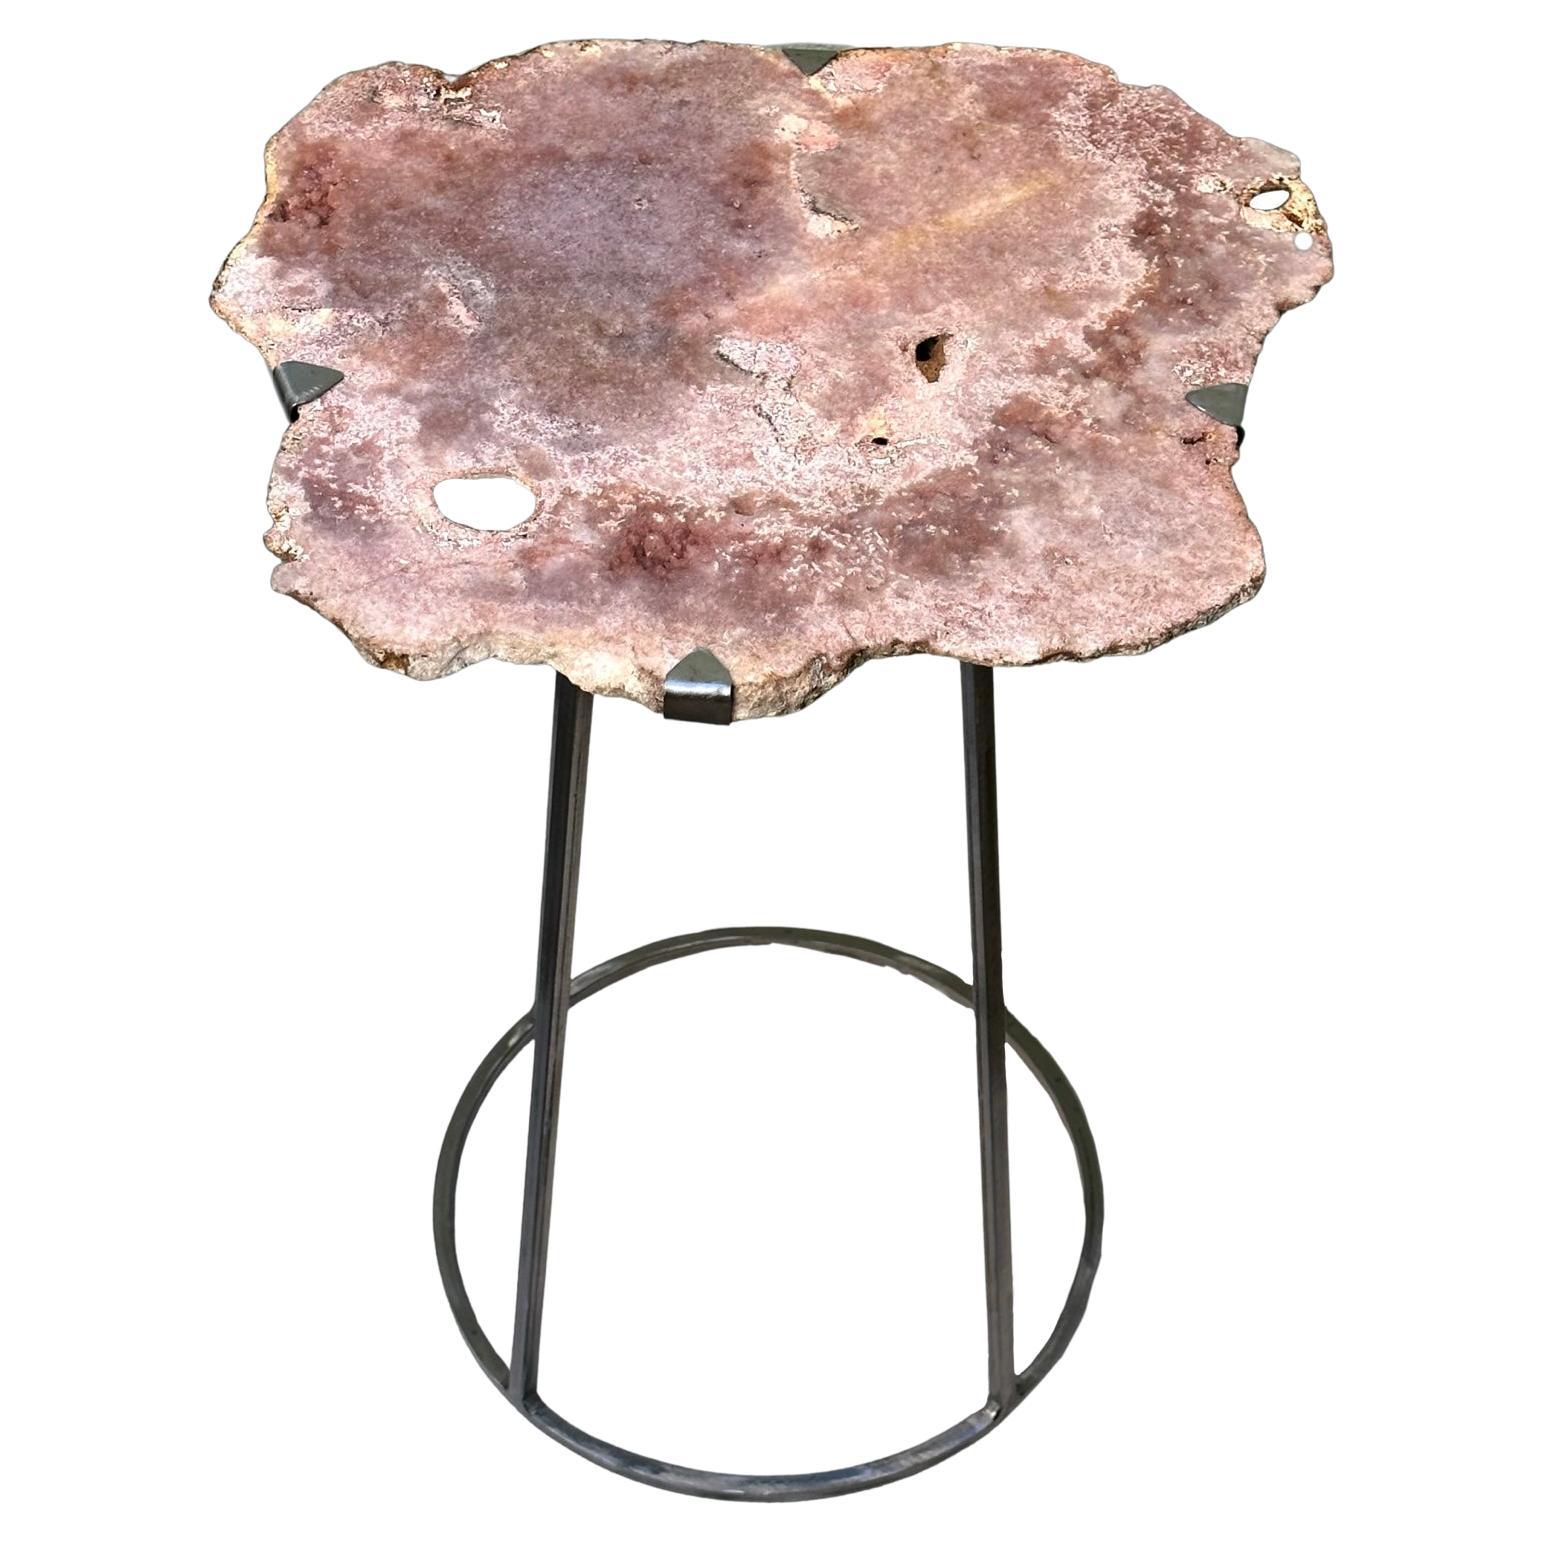 Tisch aus geschmiedetem Natureisen mit Lackierung,
Natürliche Rose Amethyst oben
einzelnen Tisch aufgrund der Natürlichkeit des Steins. 